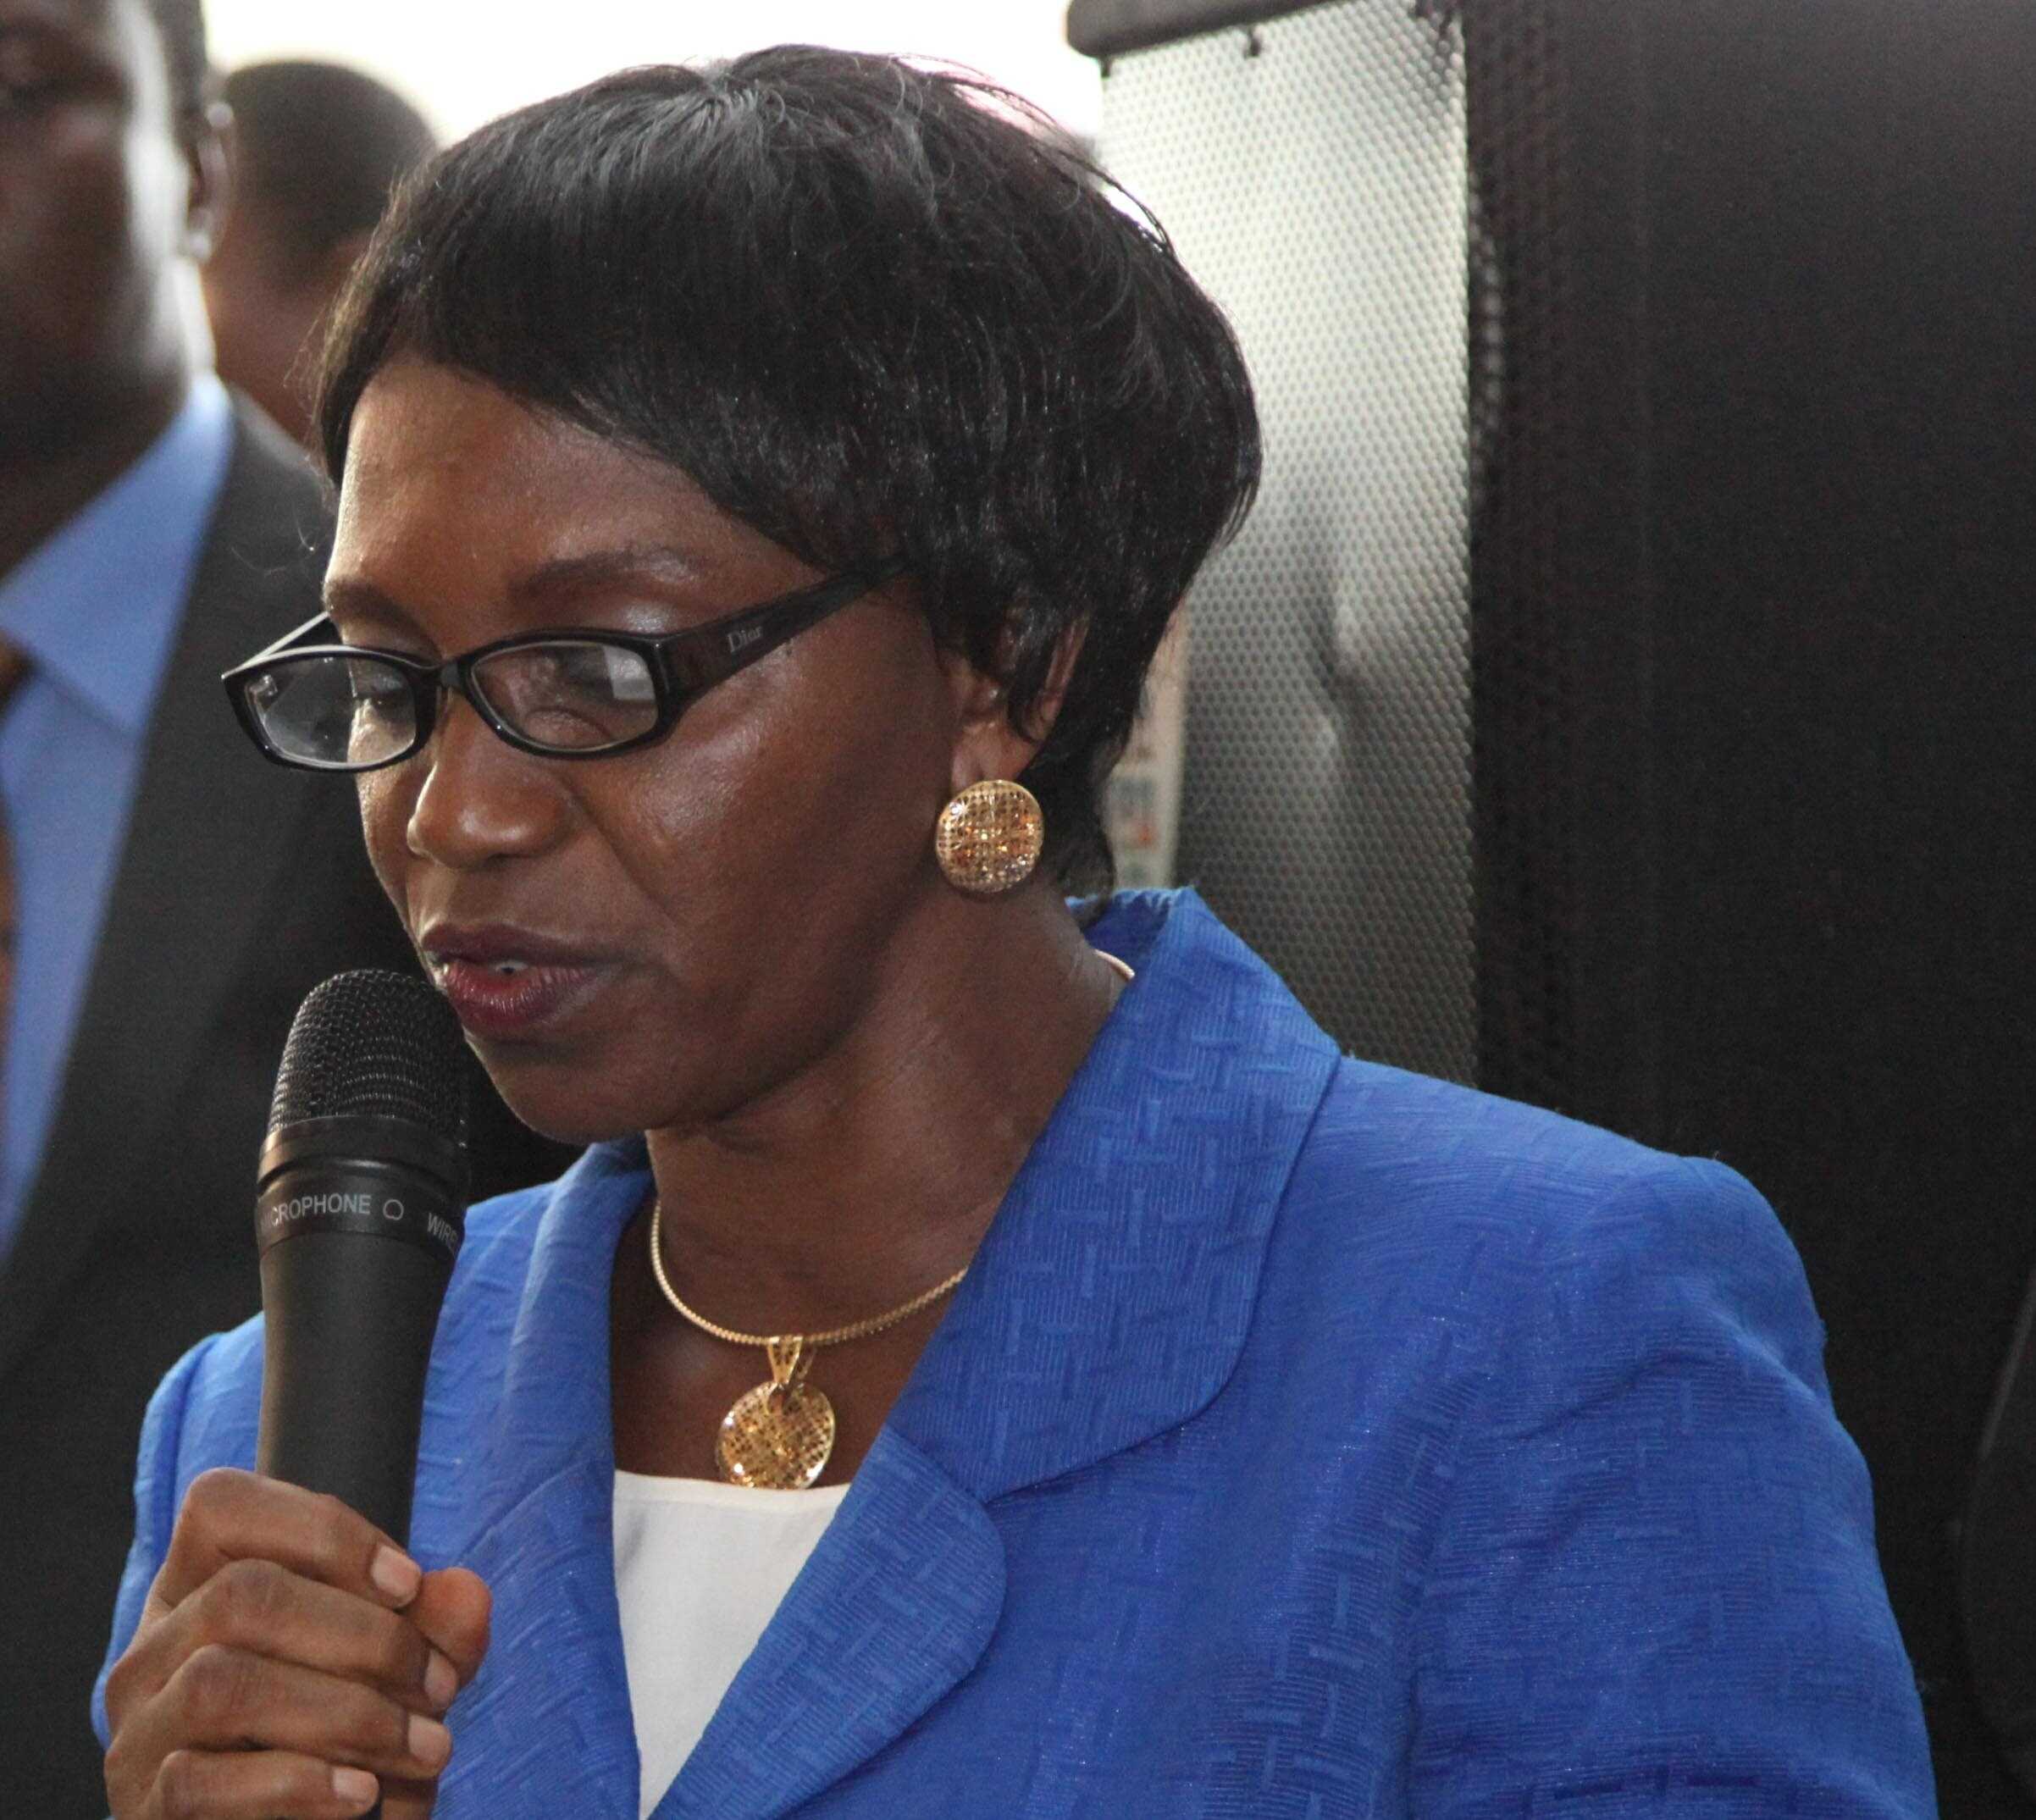 VC Of AAU Cordelia Agbebaku dies